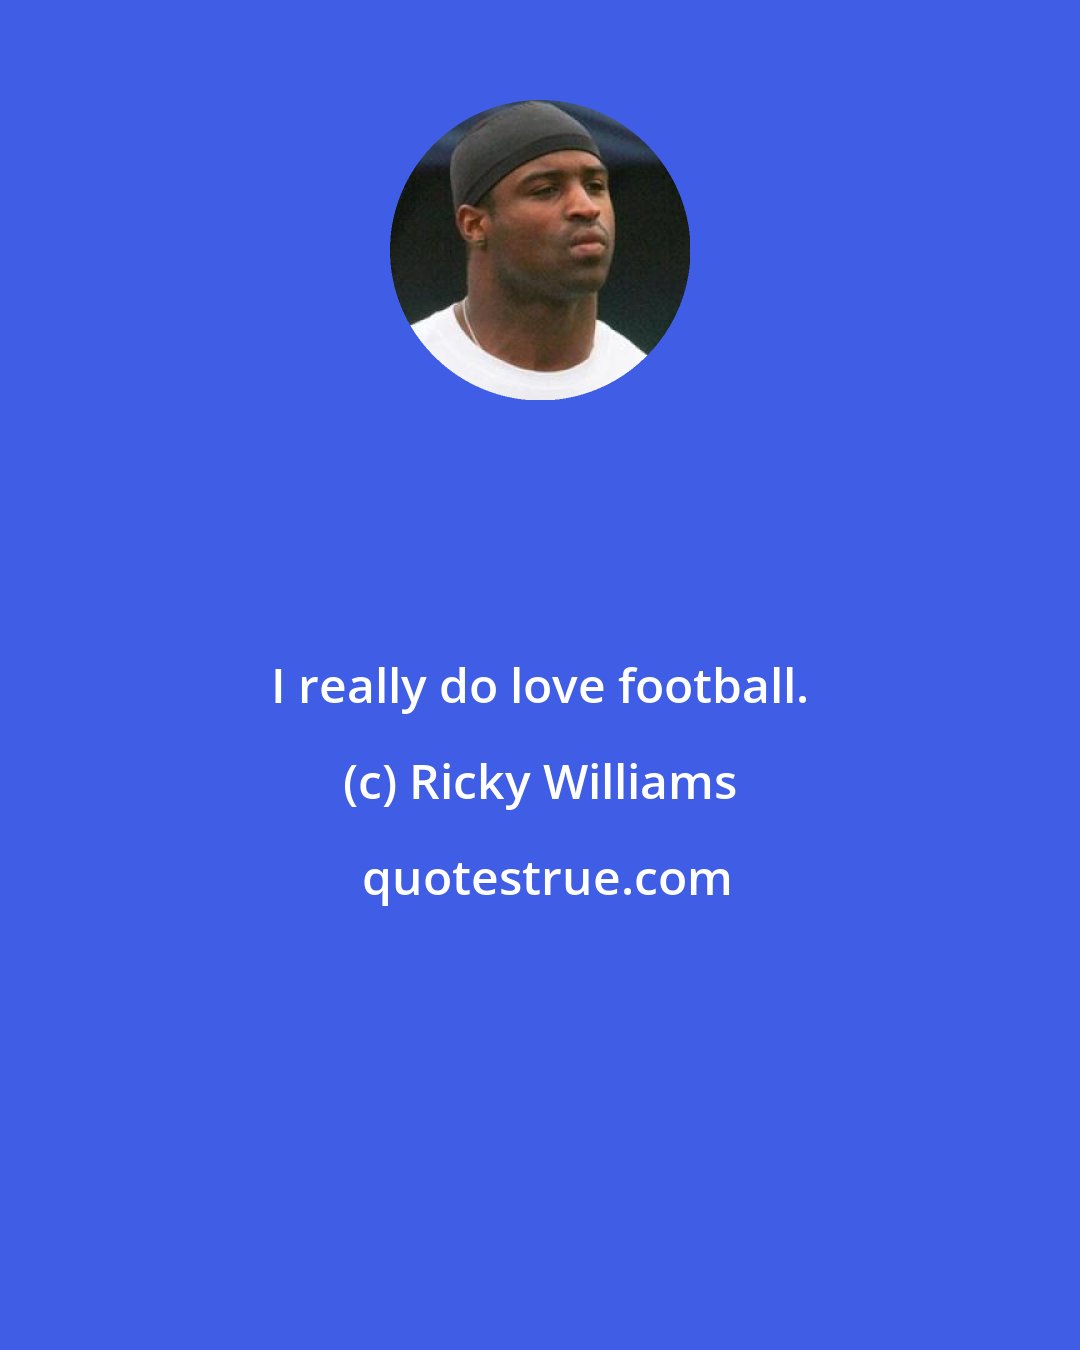 Ricky Williams: I really do love football.